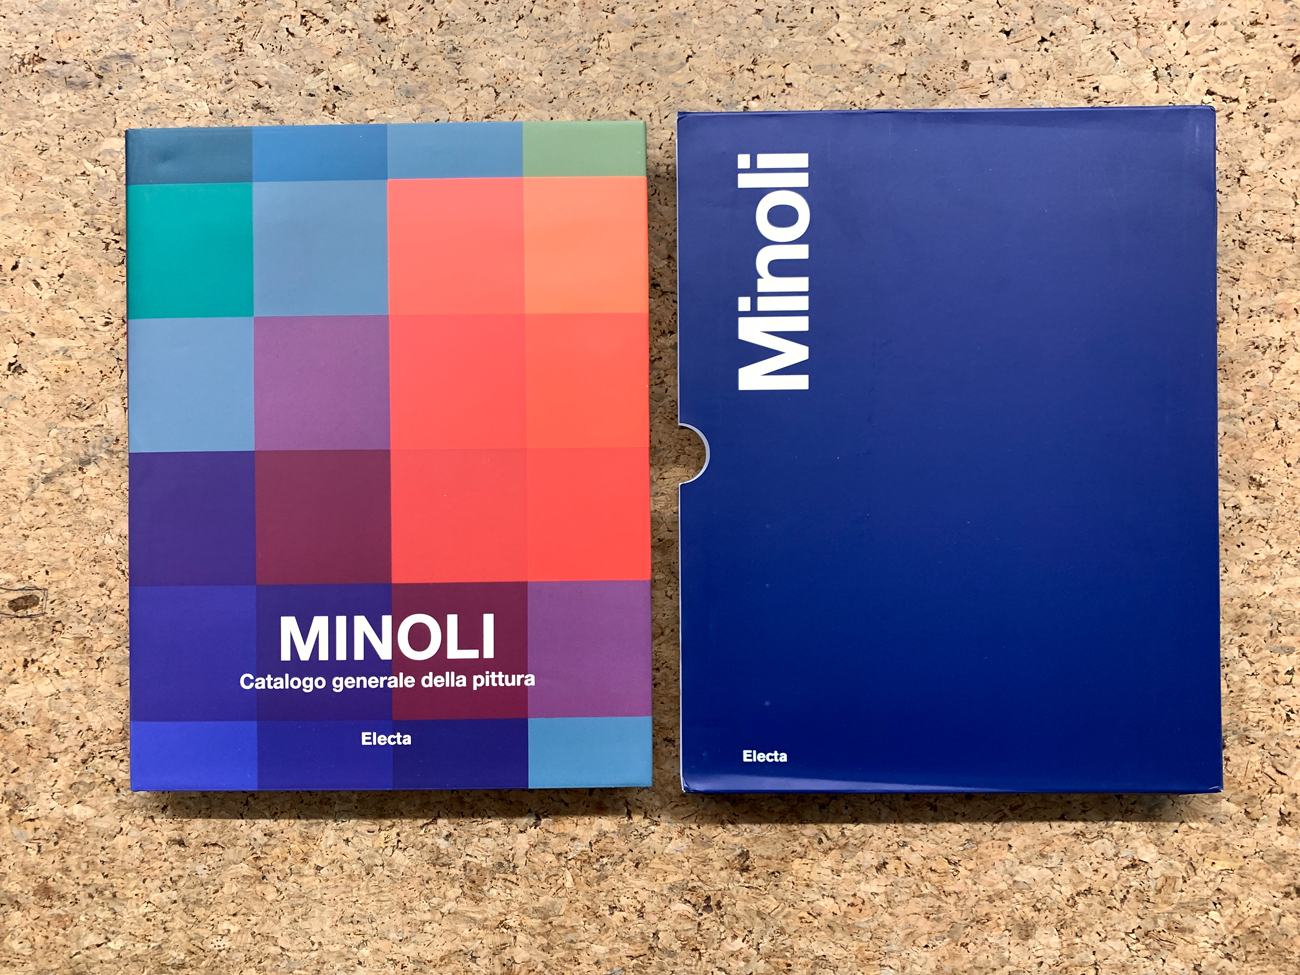 PAOLO MINOLI - Minoli. Catalogo generale della pittura. Volume primo 1959-1979, 2018